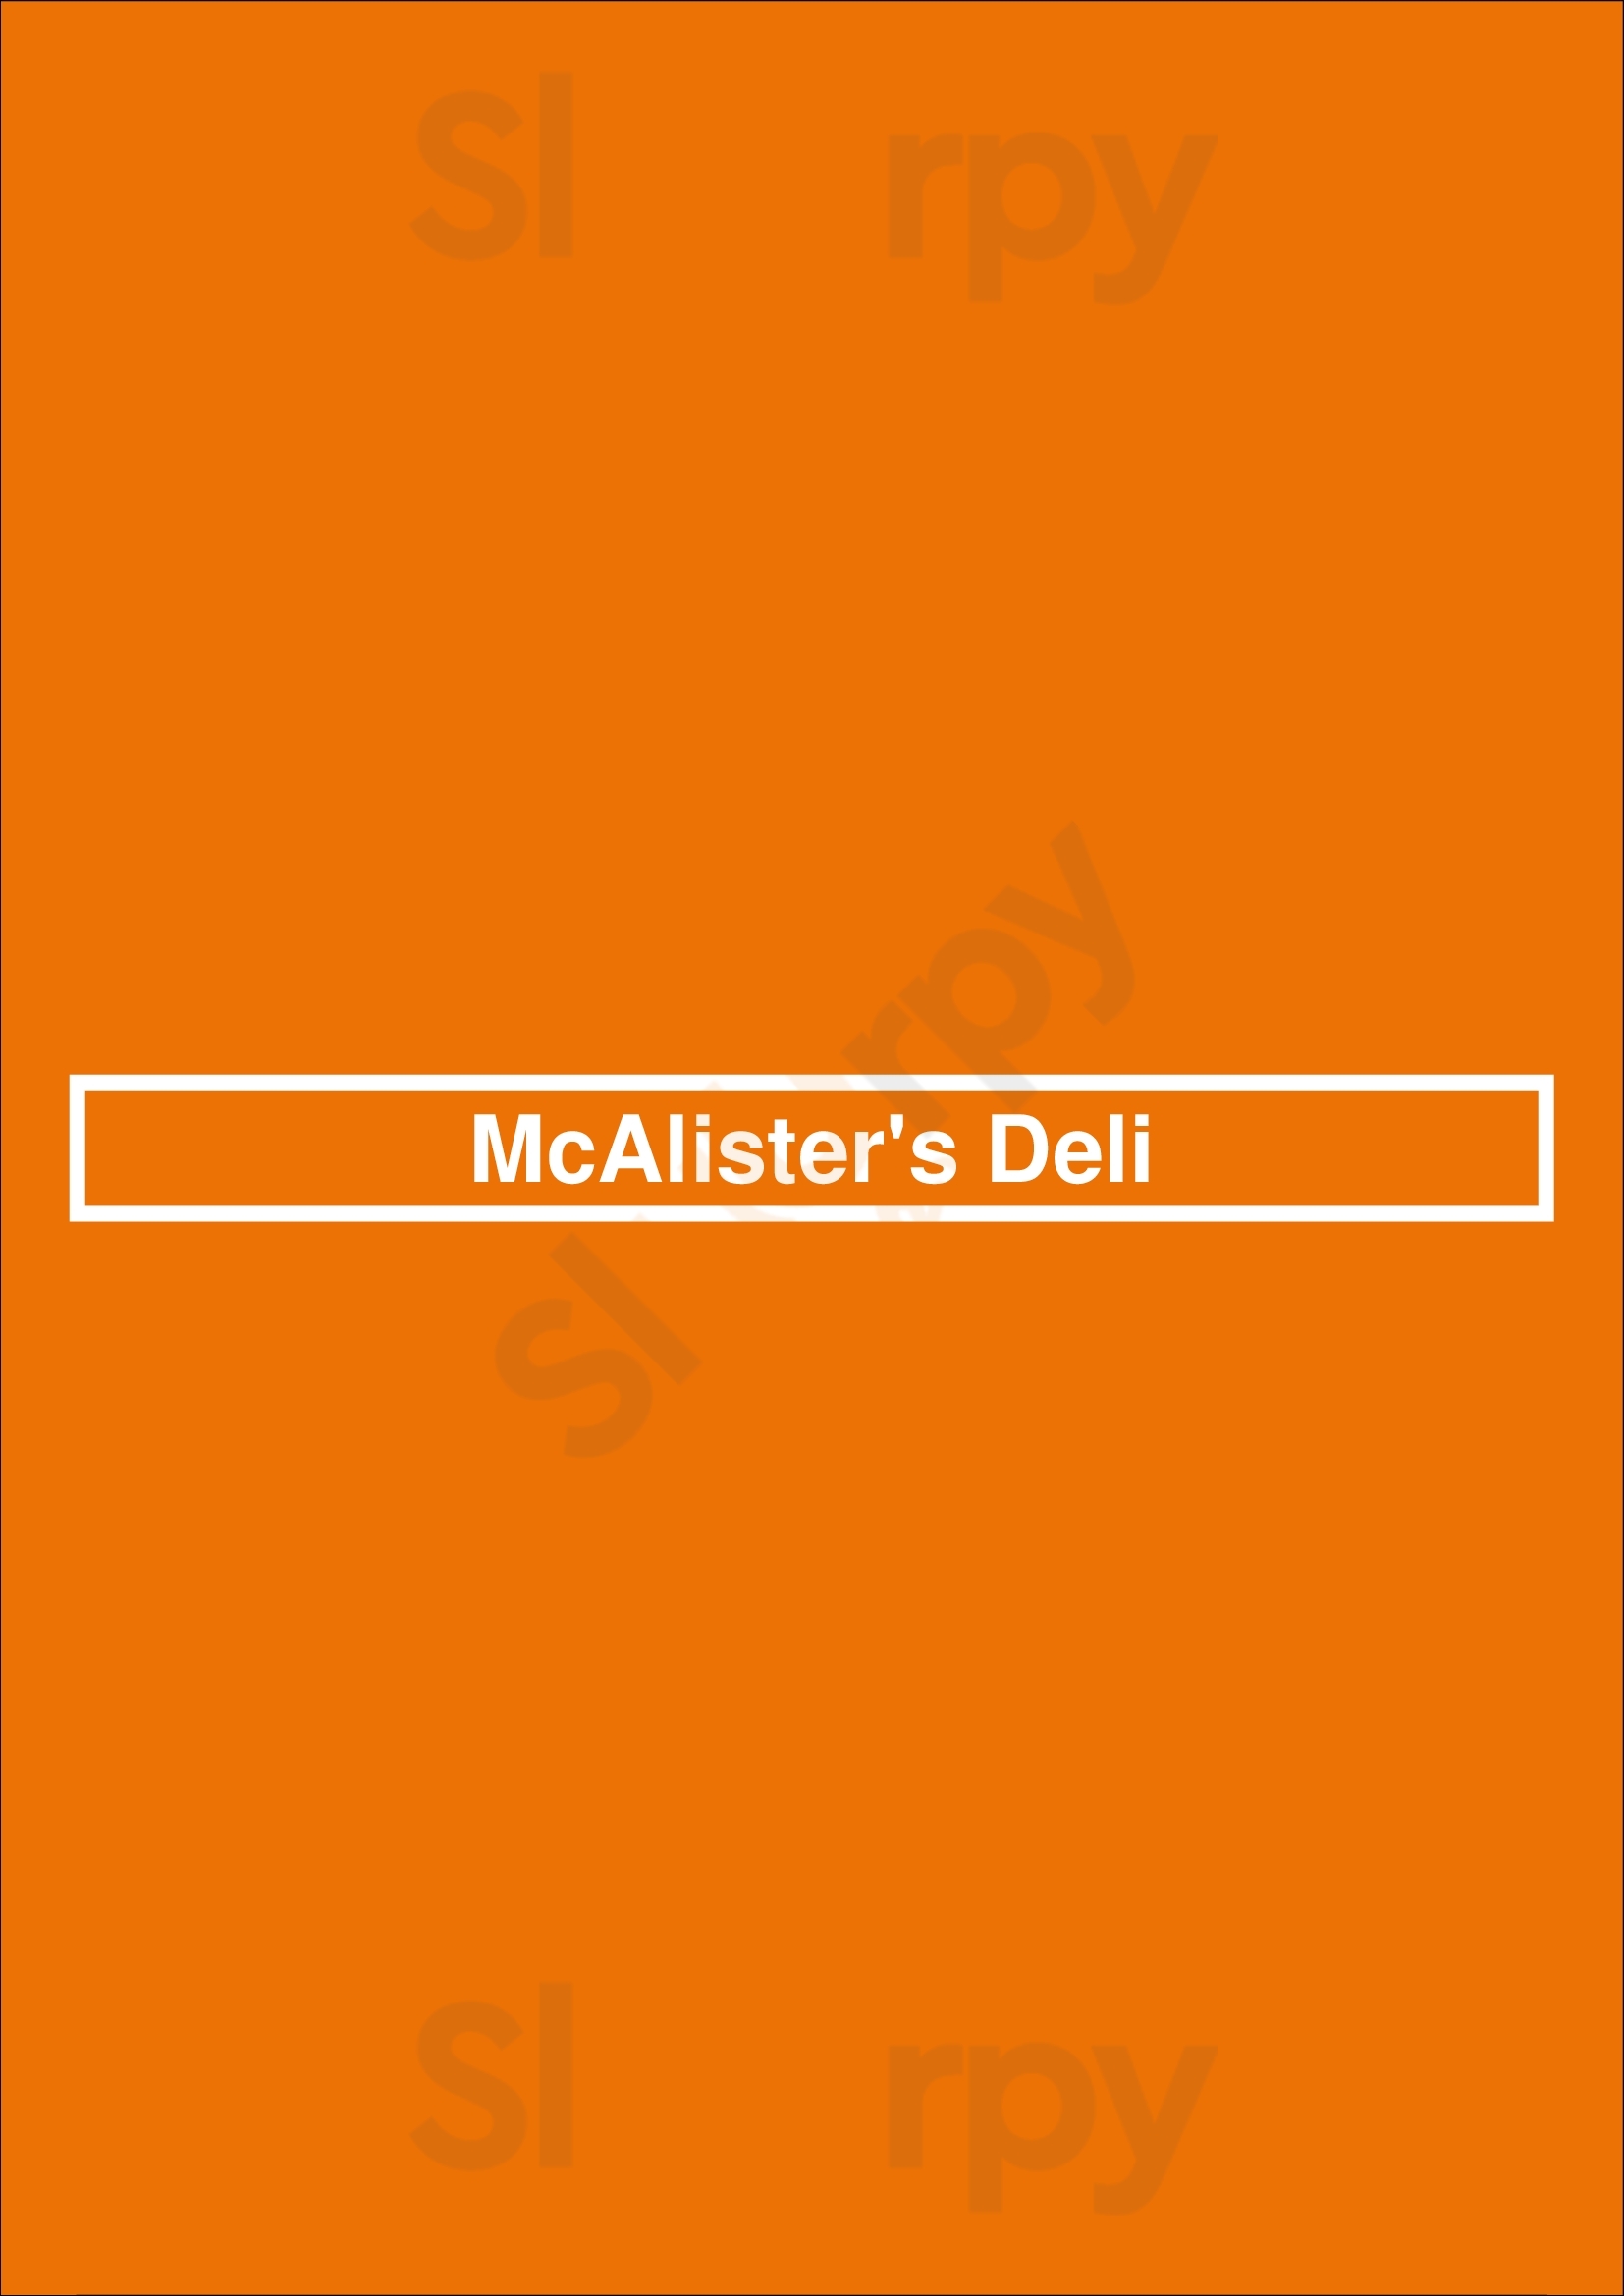 Mcalister's Deli Cincinnati Menu - 1